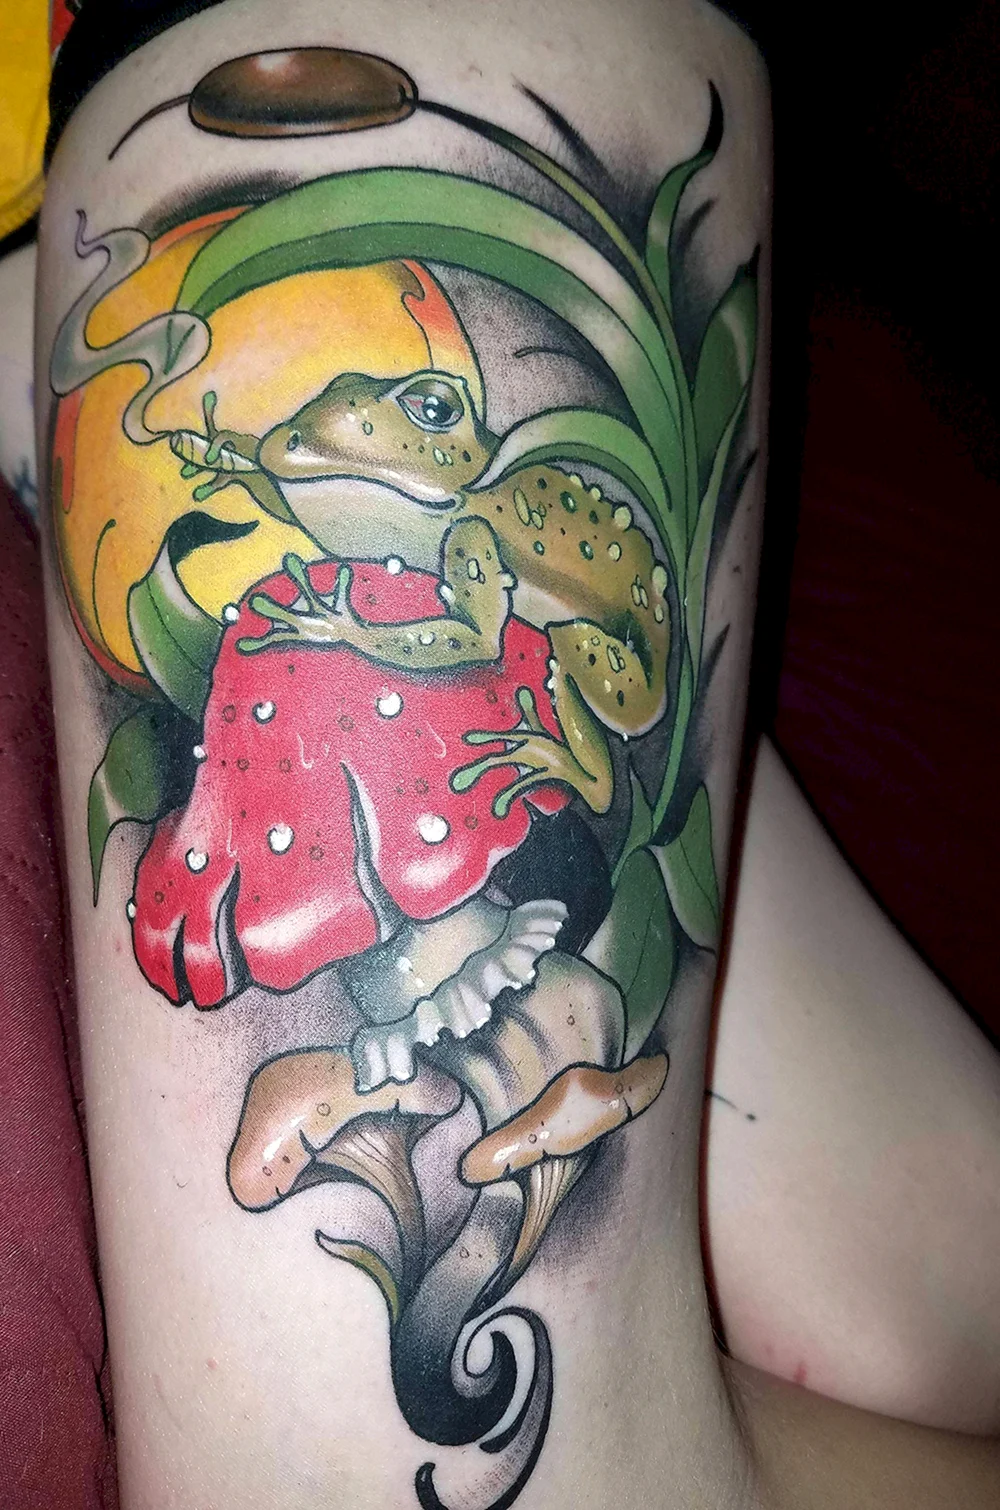 Frog on Mushroom Tattoo